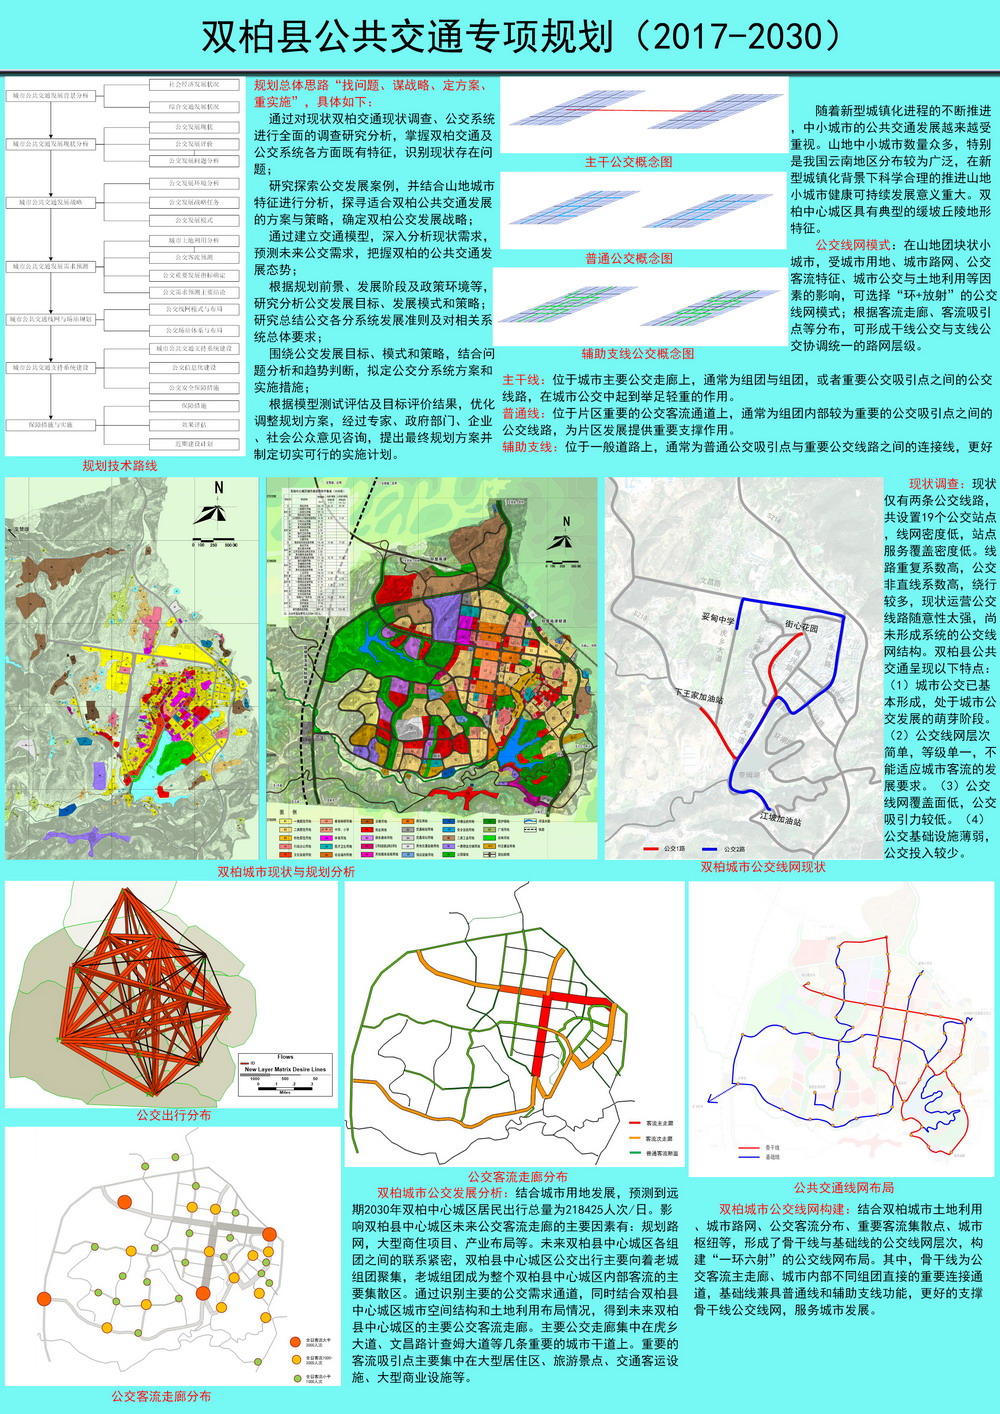 双柏县公共交通专项规划（2017-2030）展板.jpg